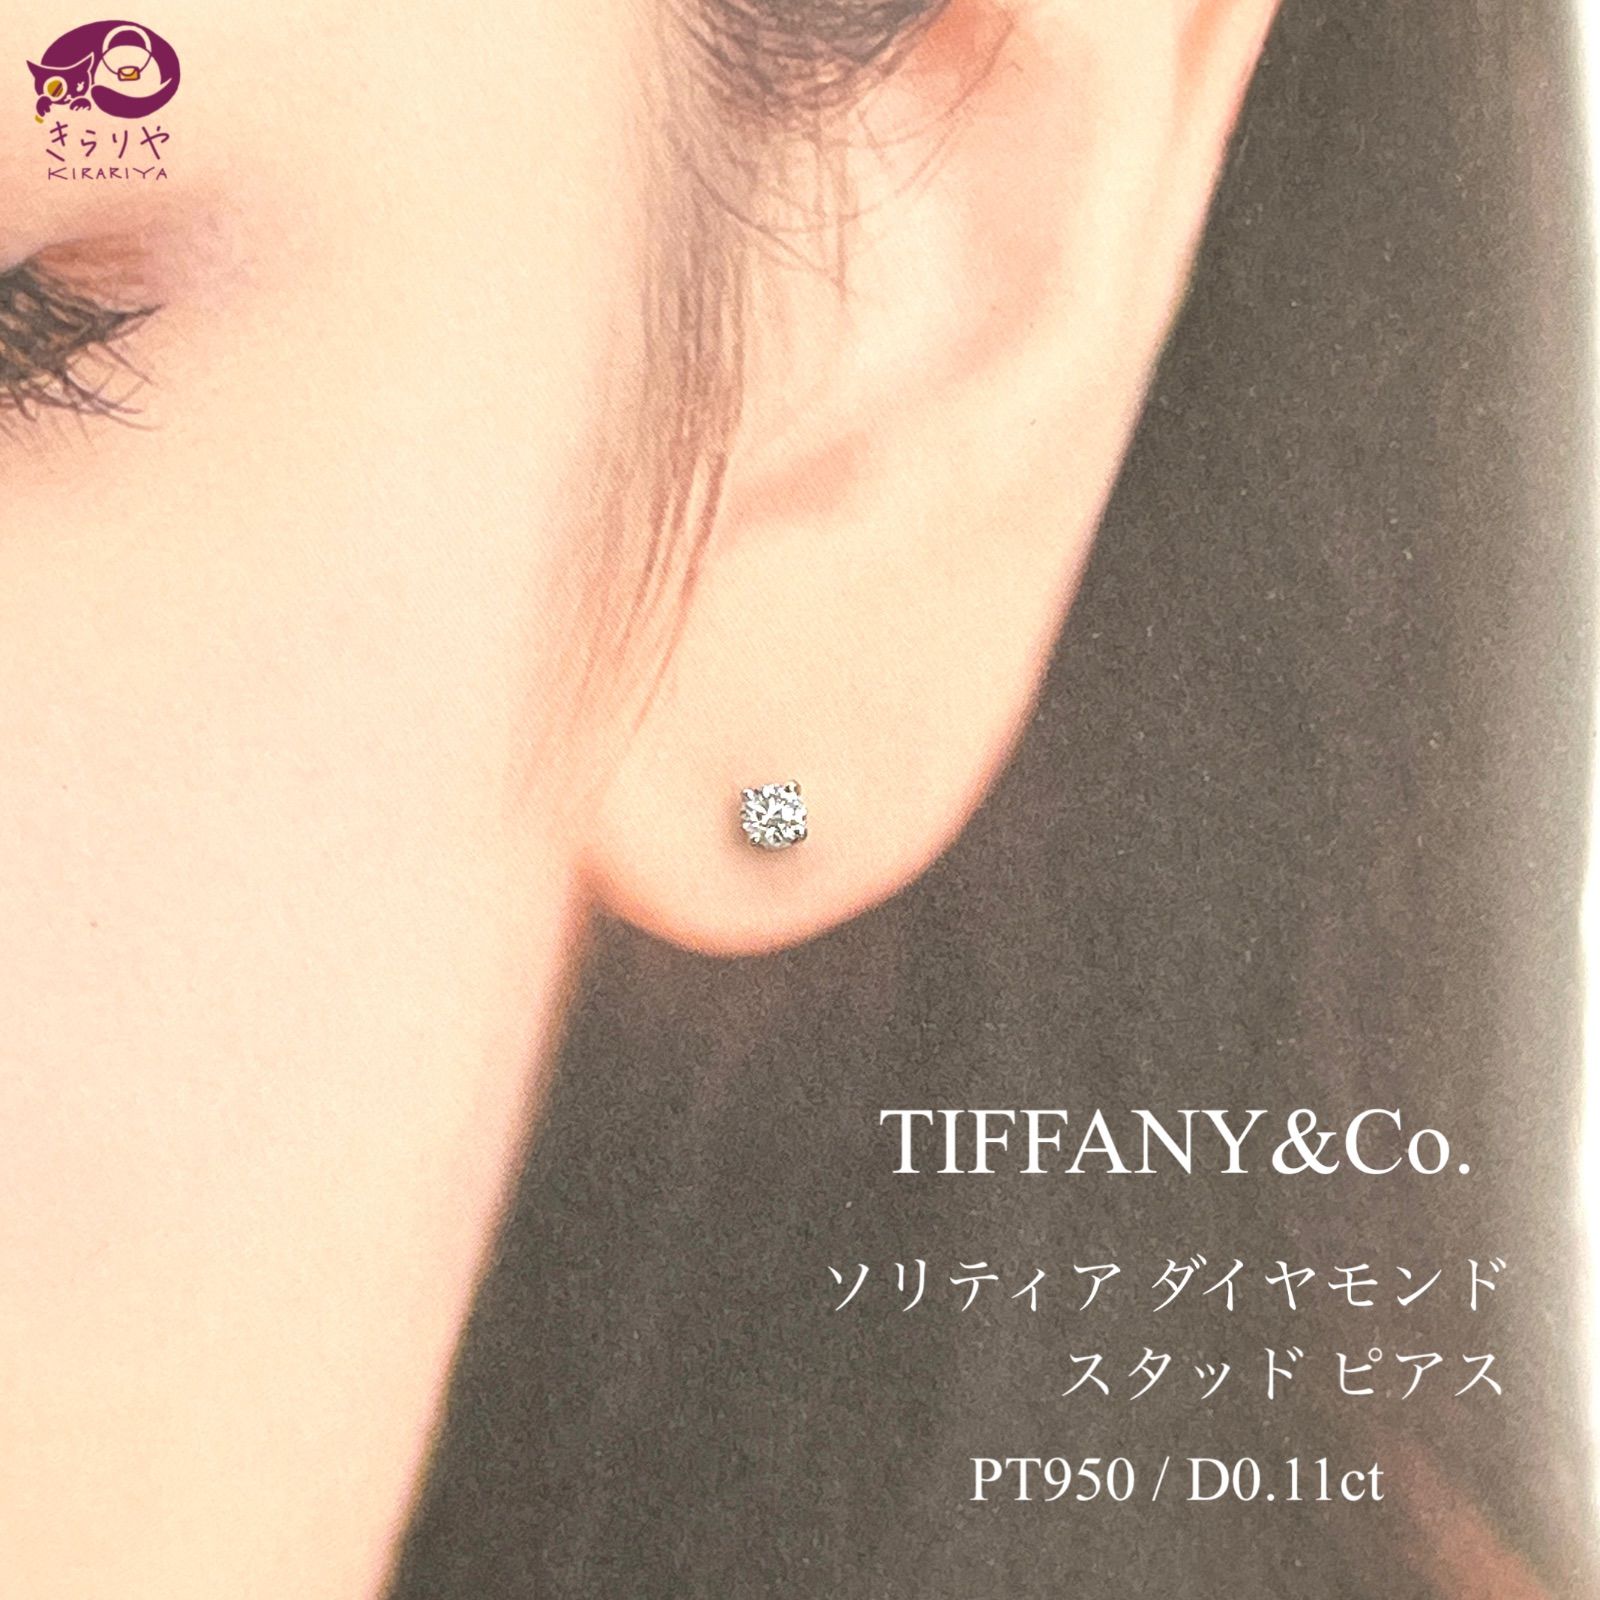 材質プラチナダイヤモンド大粒 Tiffanyソリティア ダイヤモンド スタッド ピアス 片耳